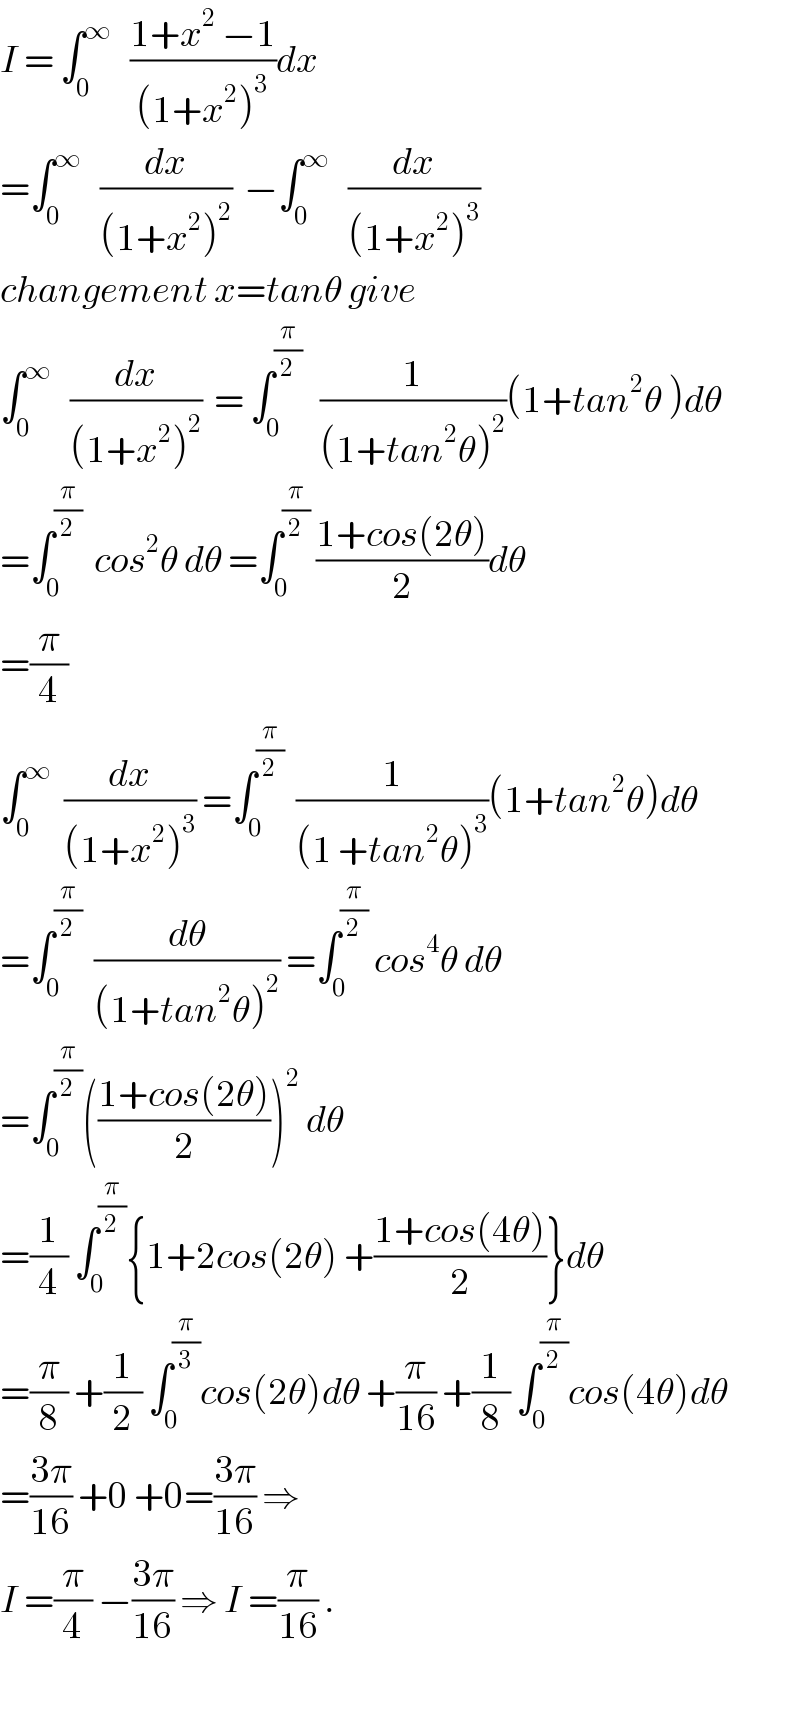 I = ∫_0 ^∞    ((1+x^2  −1)/((1+x^2 )^3 ))dx  =∫_0 ^∞    (dx/((1+x^2 )^2 ))  −∫_0 ^∞    (dx/((1+x^2 )^3 ))  changement x=tanθ give  ∫_0 ^∞    (dx/((1+x^2 )^2 ))  = ∫_0 ^(π/2)    (1/((1+tan^2 θ)^2 ))(1+tan^2 θ )dθ  =∫_0 ^(π/2)   cos^2 θ dθ =∫_0 ^(π/2)  ((1+cos(2θ))/2)dθ  =(π/4)  ∫_0 ^∞   (dx/((1+x^2 )^3 )) =∫_0 ^(π/2)   (1/((1 +tan^2 θ)^3 ))(1+tan^2 θ)dθ  =∫_0 ^(π/2)   (dθ/((1+tan^2 θ)^2 )) =∫_0 ^(π/2)  cos^4 θ dθ  =∫_0 ^(π/2) (((1+cos(2θ))/2))^2  dθ  =(1/4) ∫_0 ^(π/2) {1+2cos(2θ) +((1+cos(4θ))/2)}dθ  =(π/8) +(1/2) ∫_0 ^(π/3) cos(2θ)dθ +(π/(16)) +(1/8) ∫_0 ^(π/2) cos(4θ)dθ  =((3π)/(16)) +0 +0=((3π)/(16)) ⇒  I =(π/4) −((3π)/(16)) ⇒ I =(π/(16)) .    